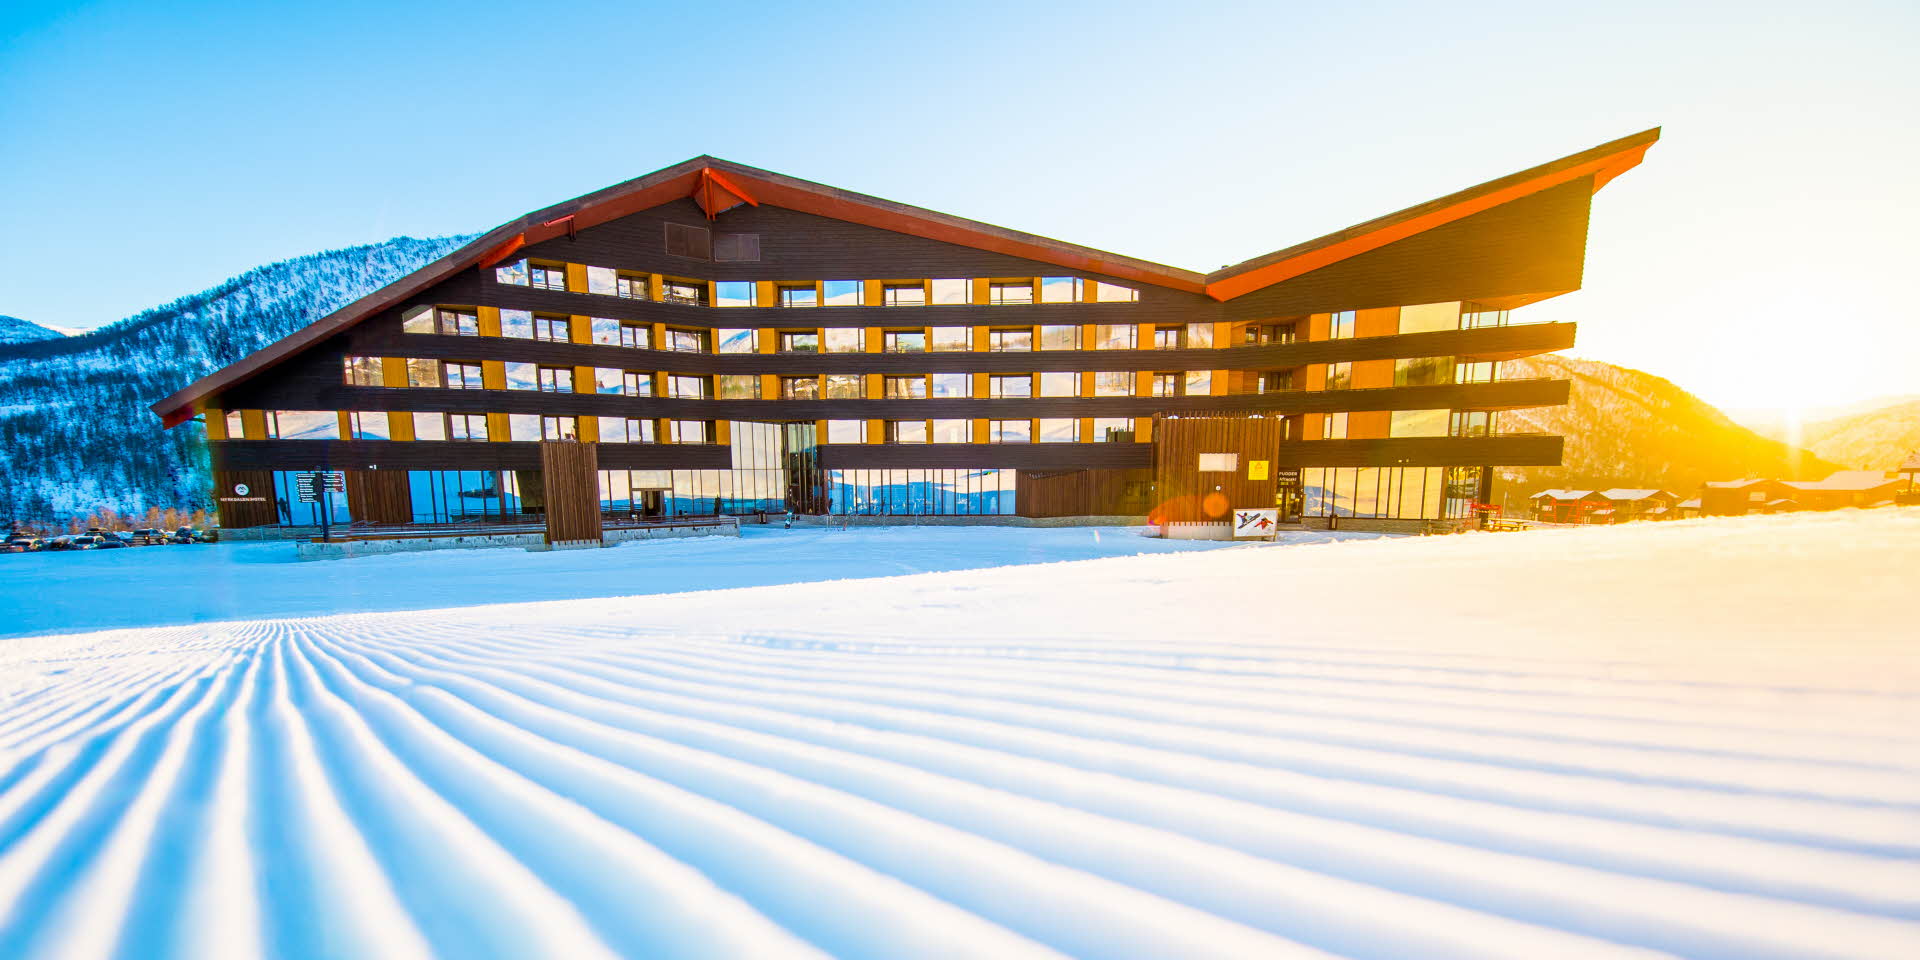 冬季从山坡雪道上看到的米克达林酒店